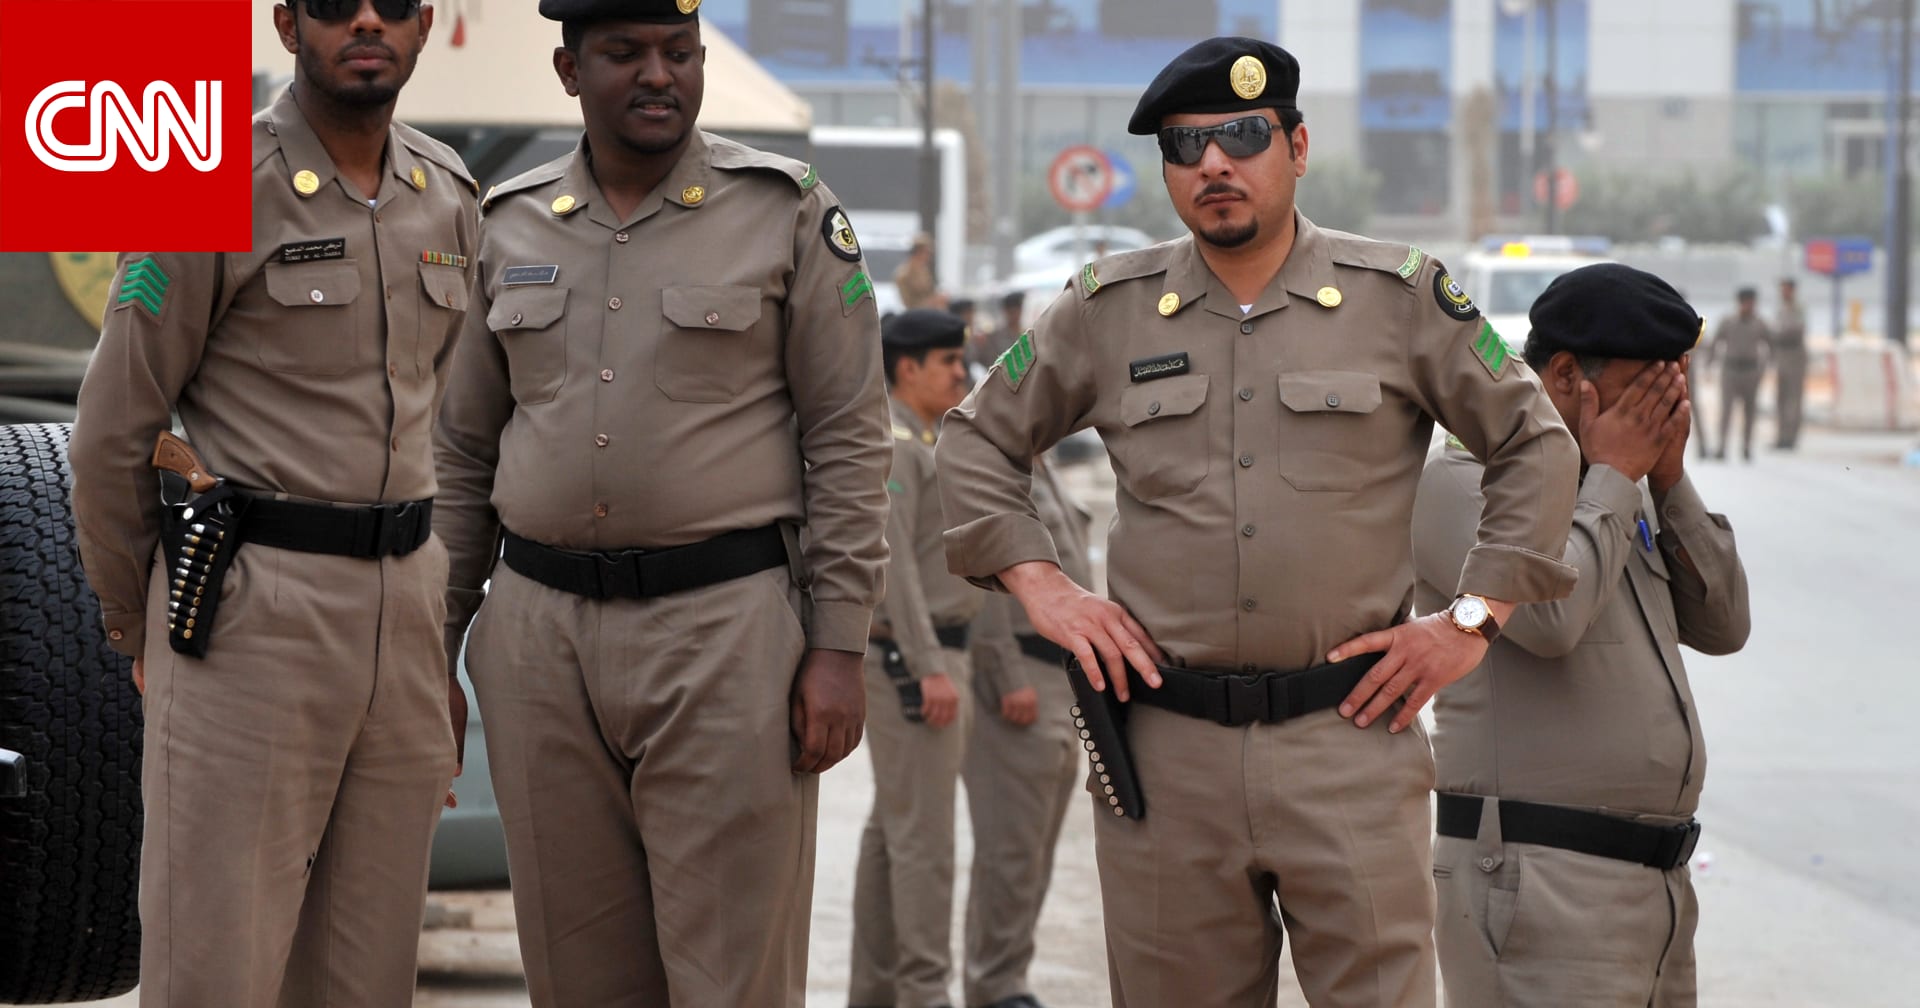 "سرقوا مركبات ولوحات لاستخدامها في جرائمهم".. الأمن السعودي يعلن اعتقال 3 مواطنين روجوا المخدرات بالرياض